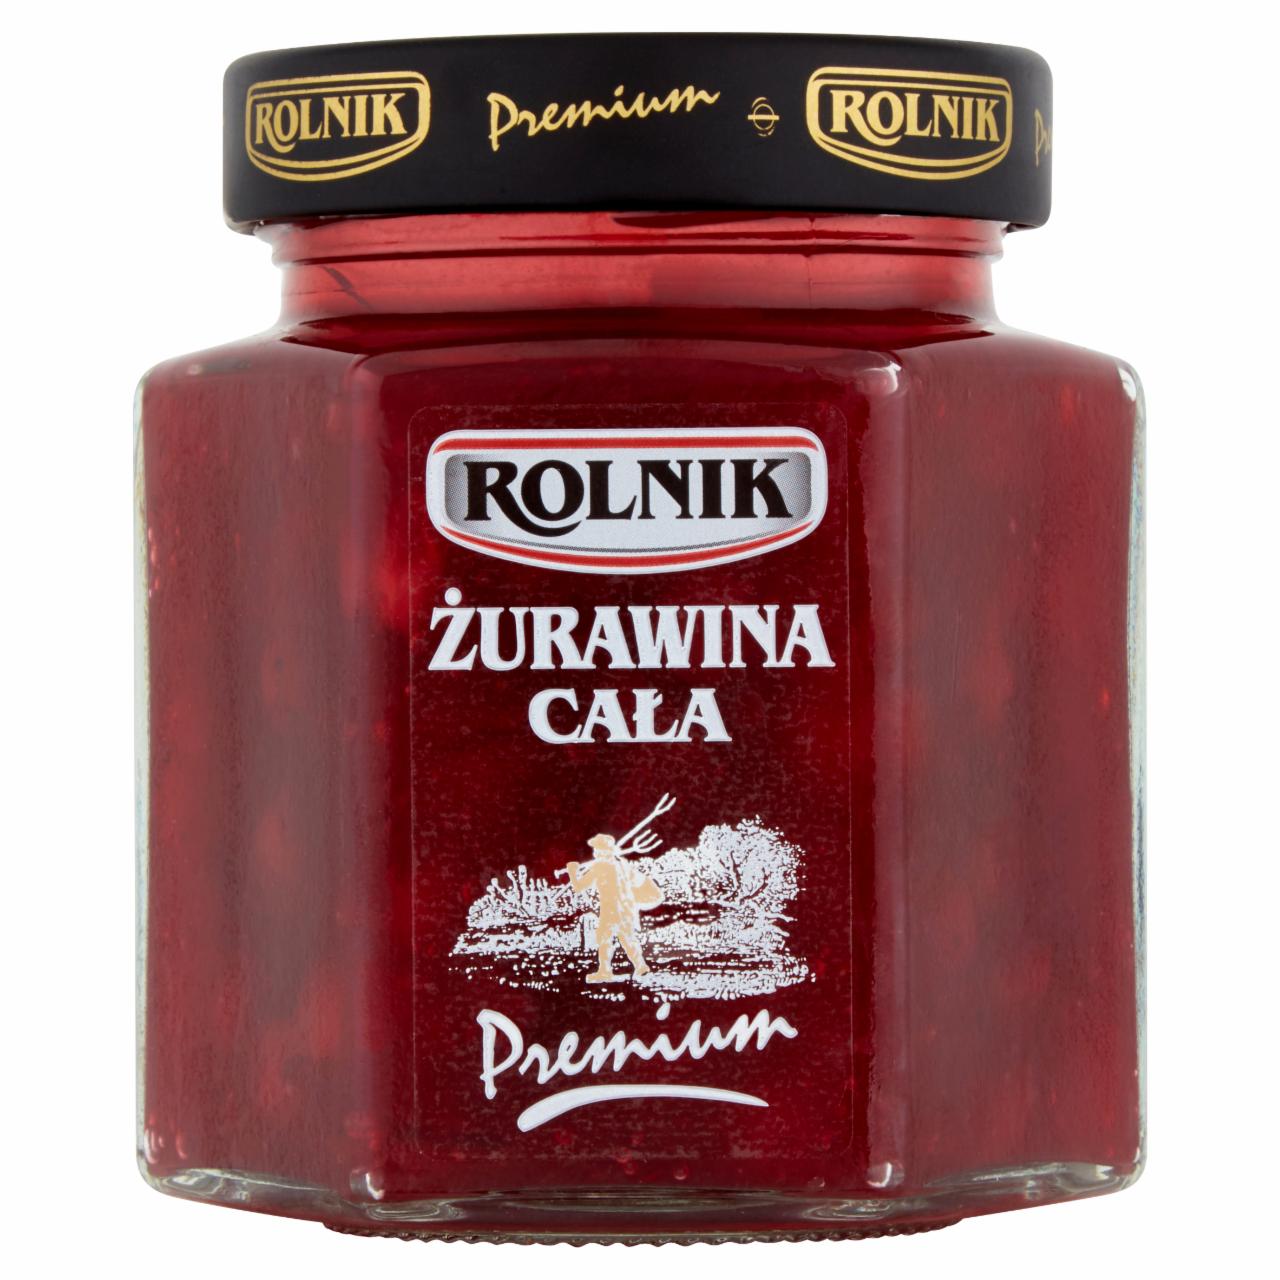 Zdjęcia - Rolnik Premium Żurawina cała 300 g